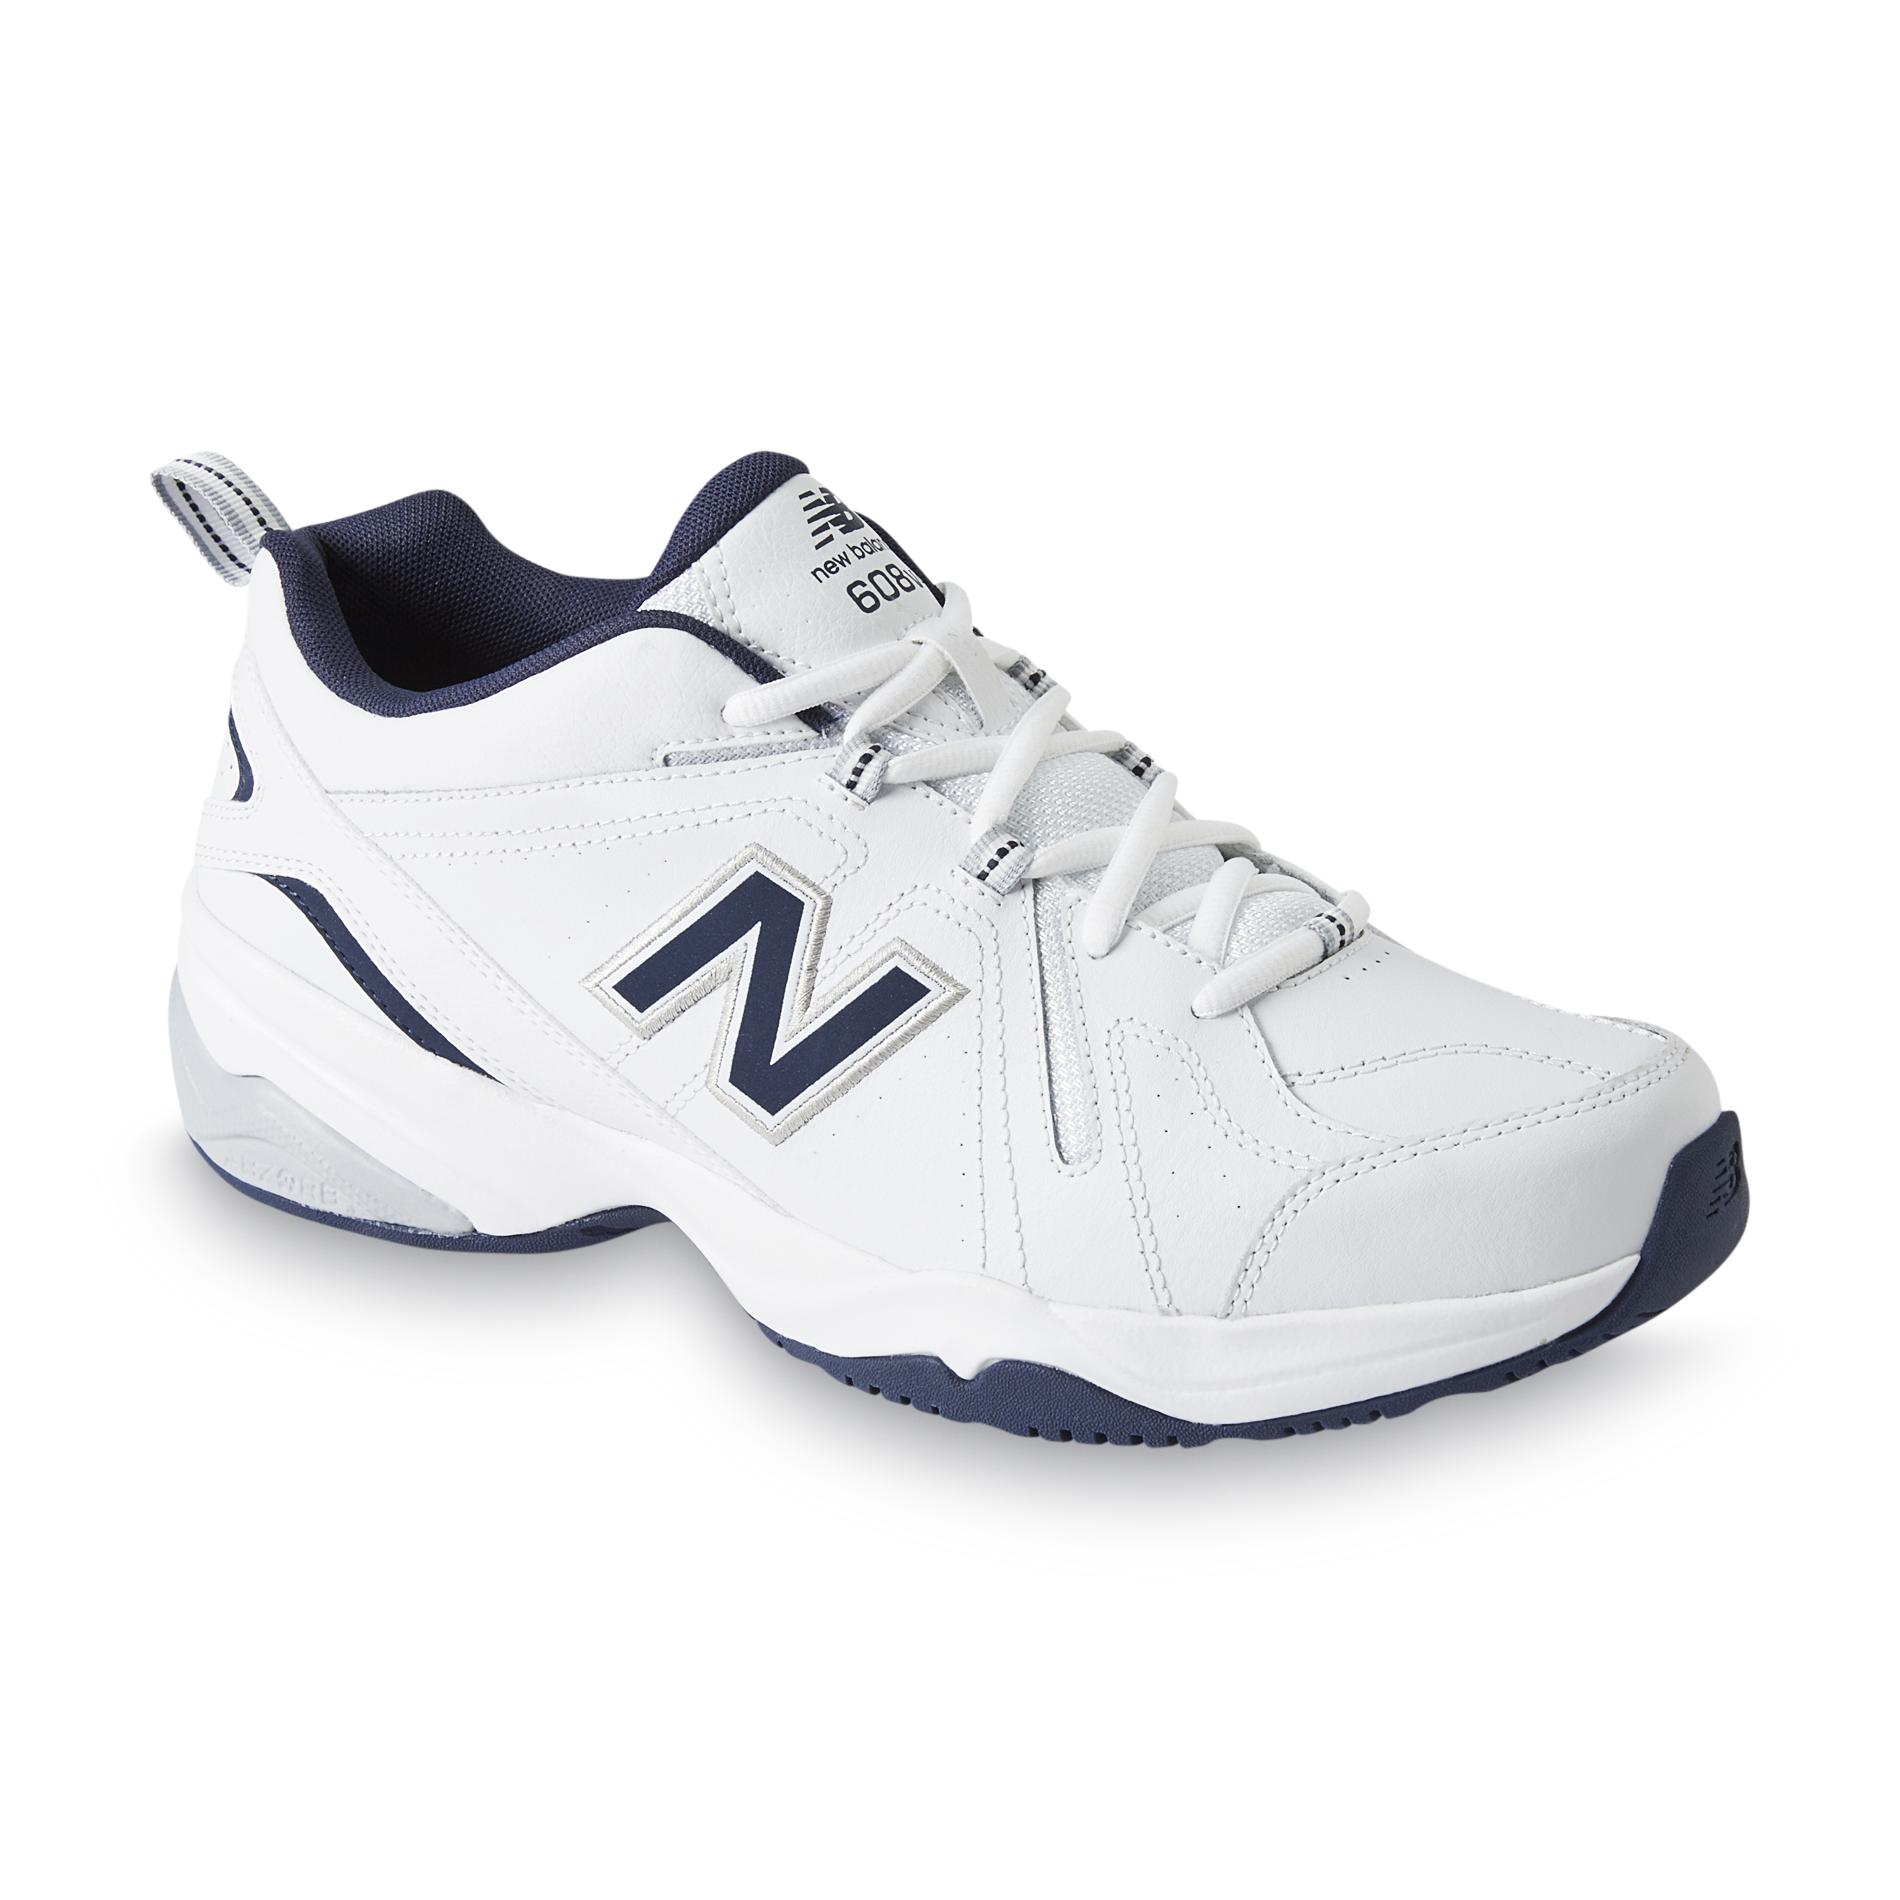 New Balance Men's 608v4 White/Navy Cross Trainer Athletic Shoe - Wide ...